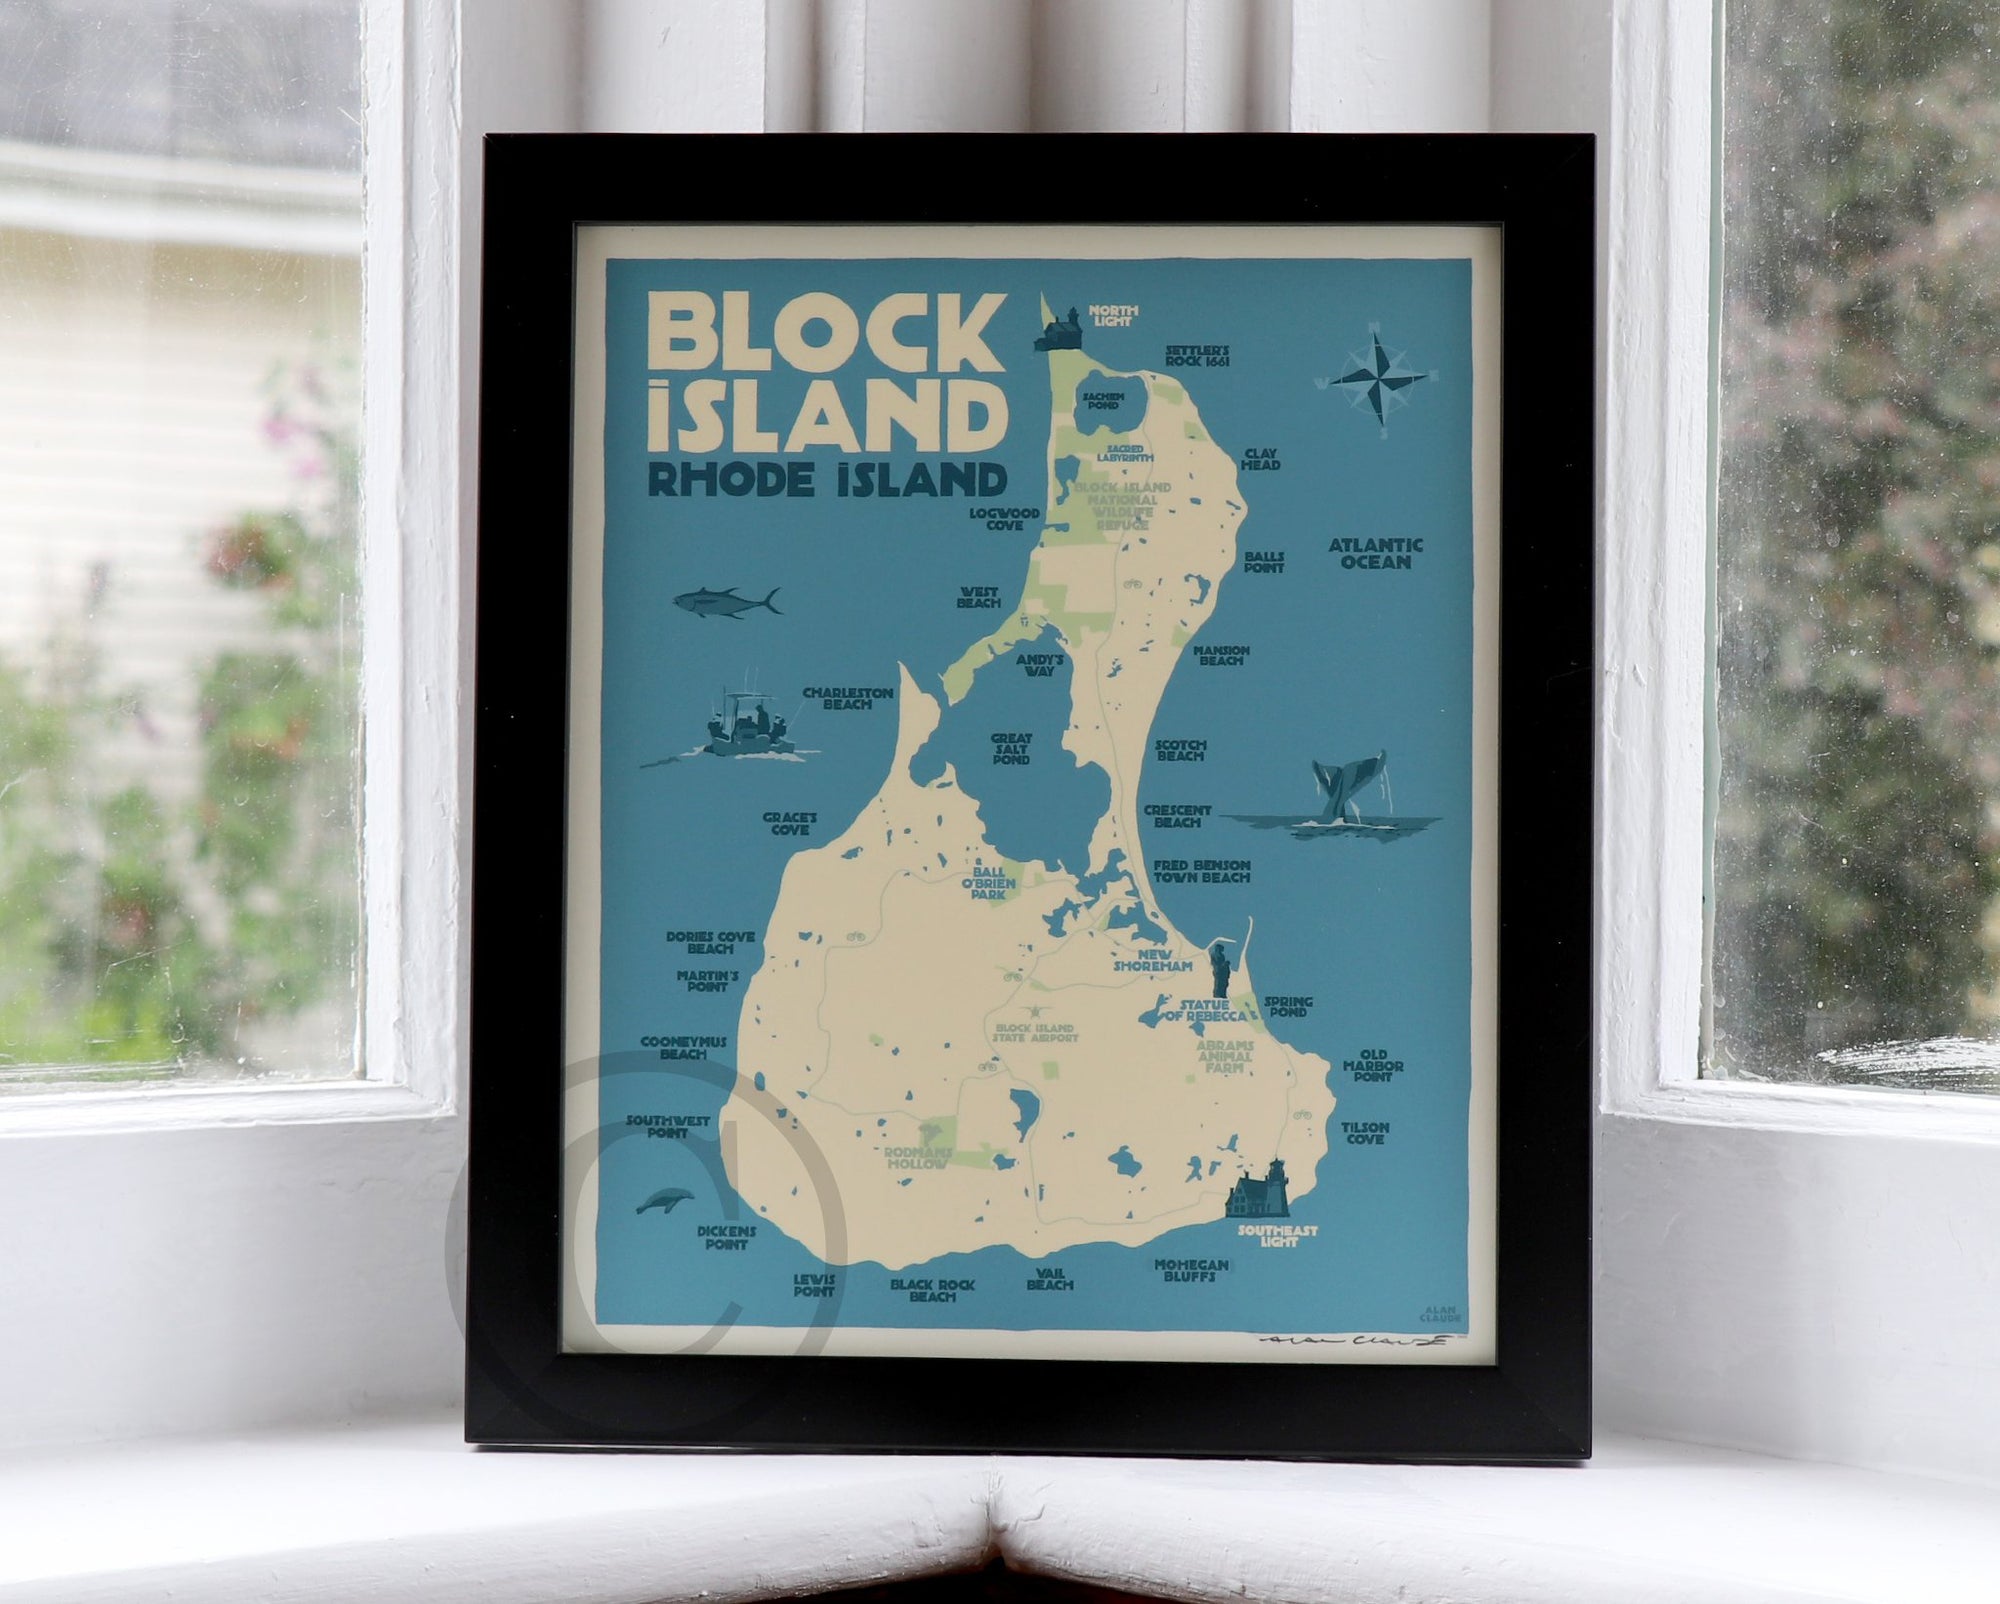 Block Island Map Art Print 8" x 10" Framed Wall Poster By Alan Claude - Rhode Island